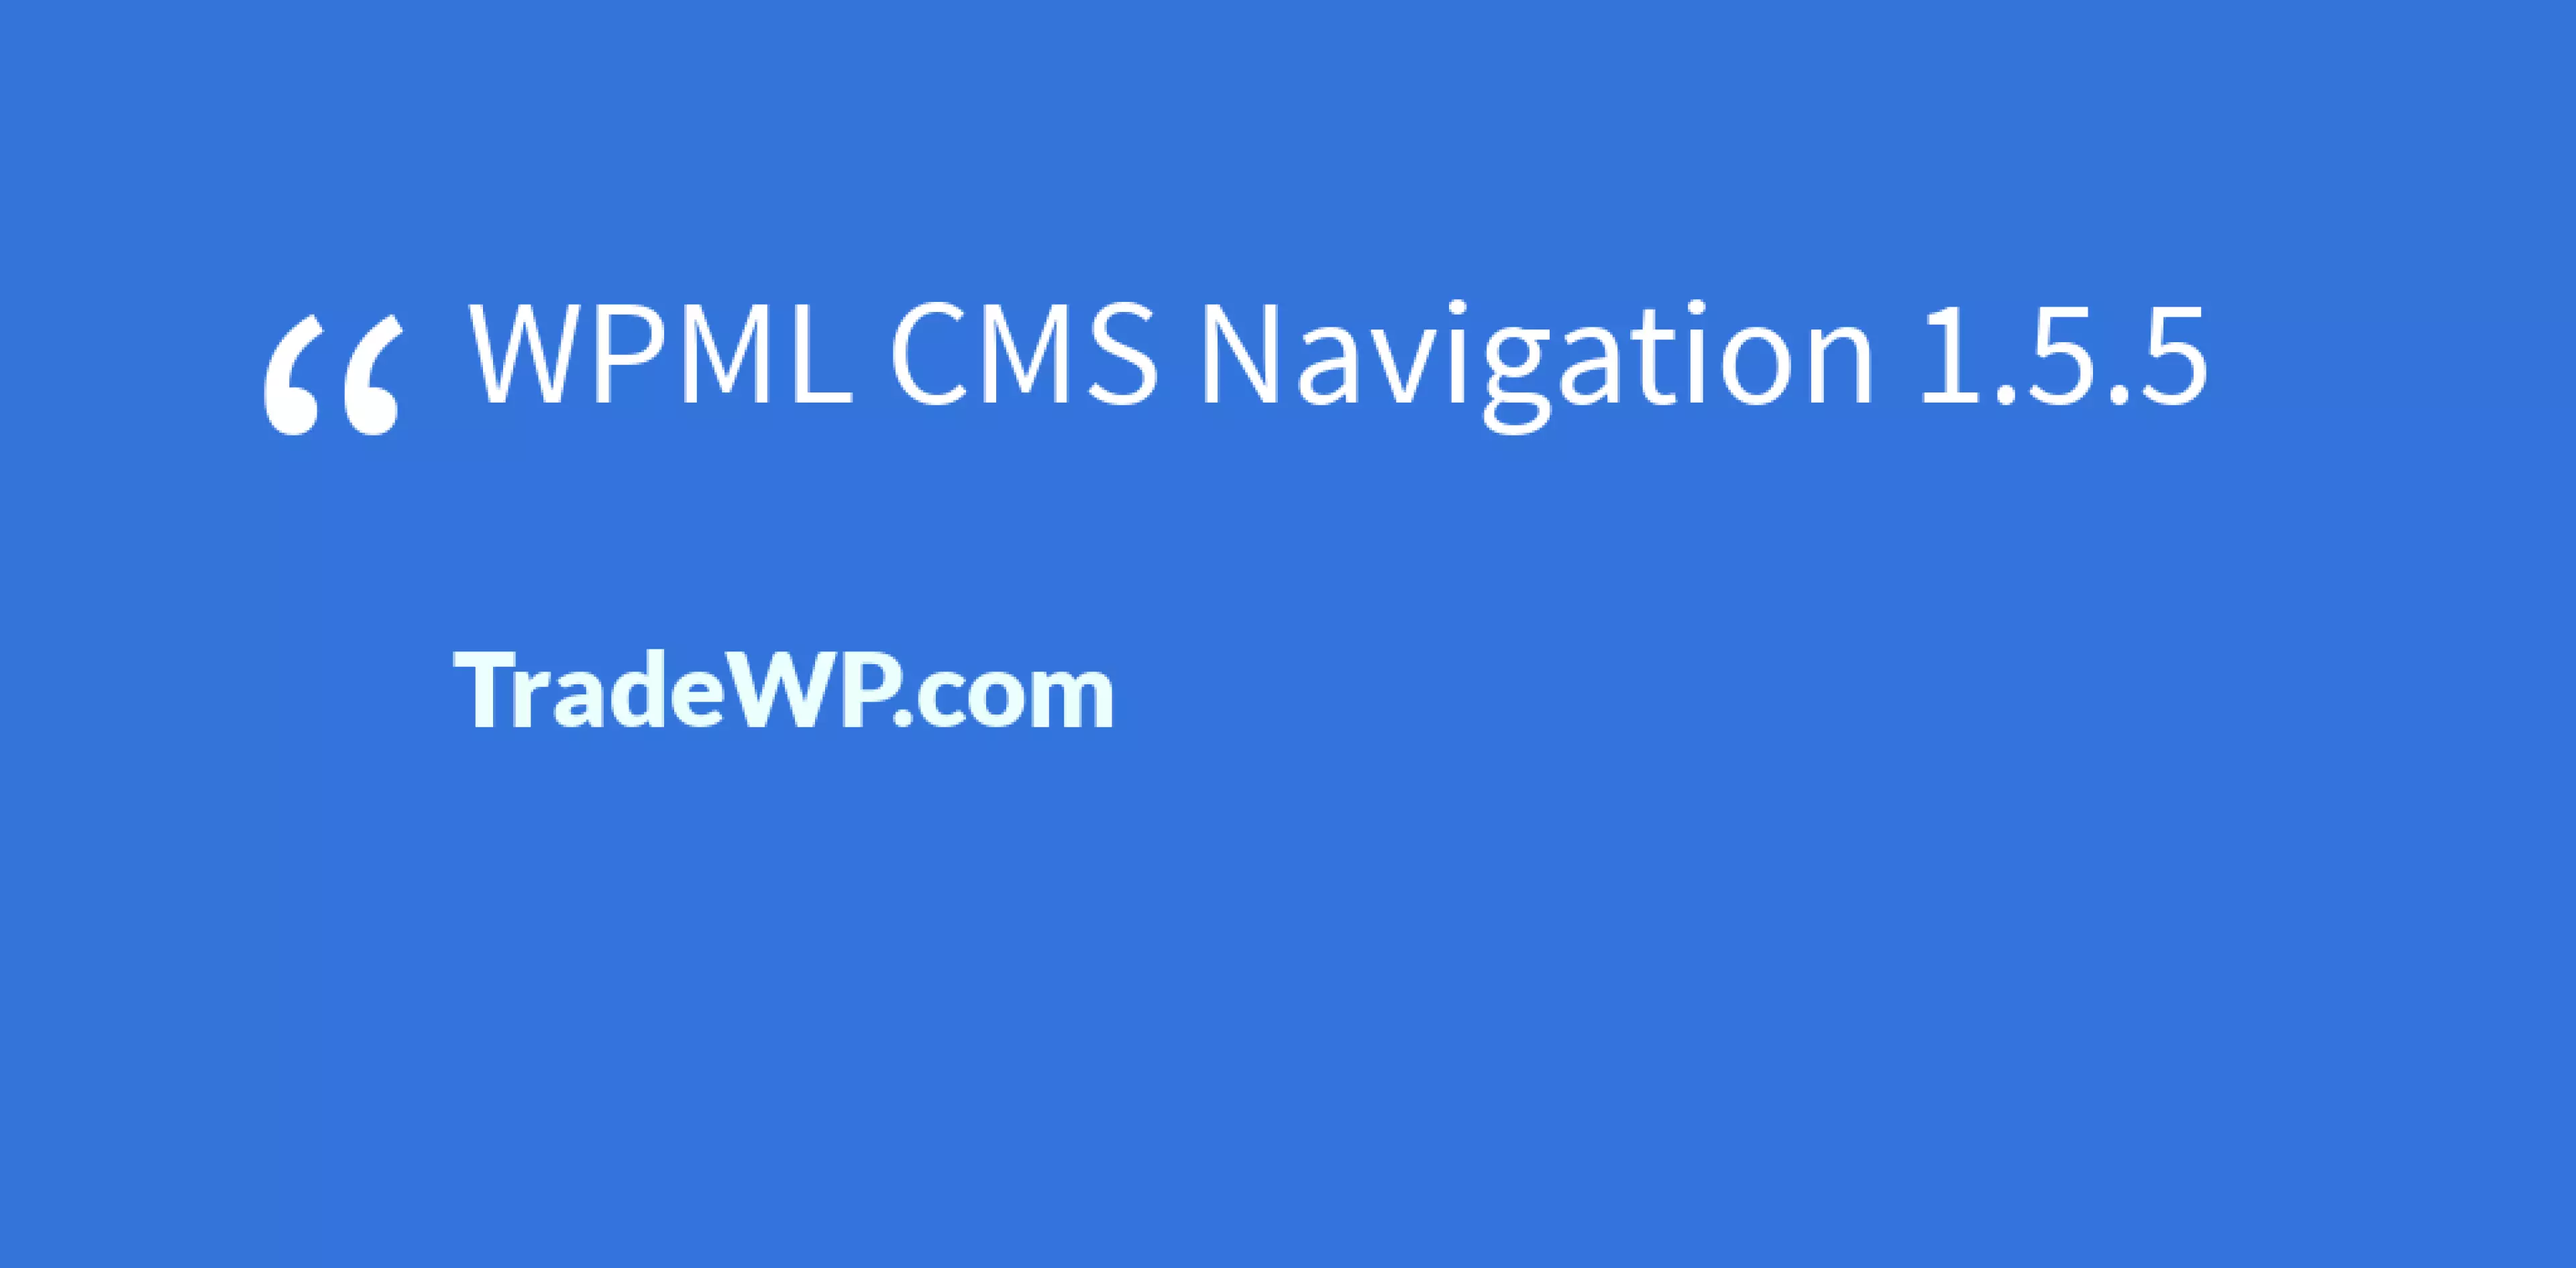 WPML CMS Navigation 1.5.5